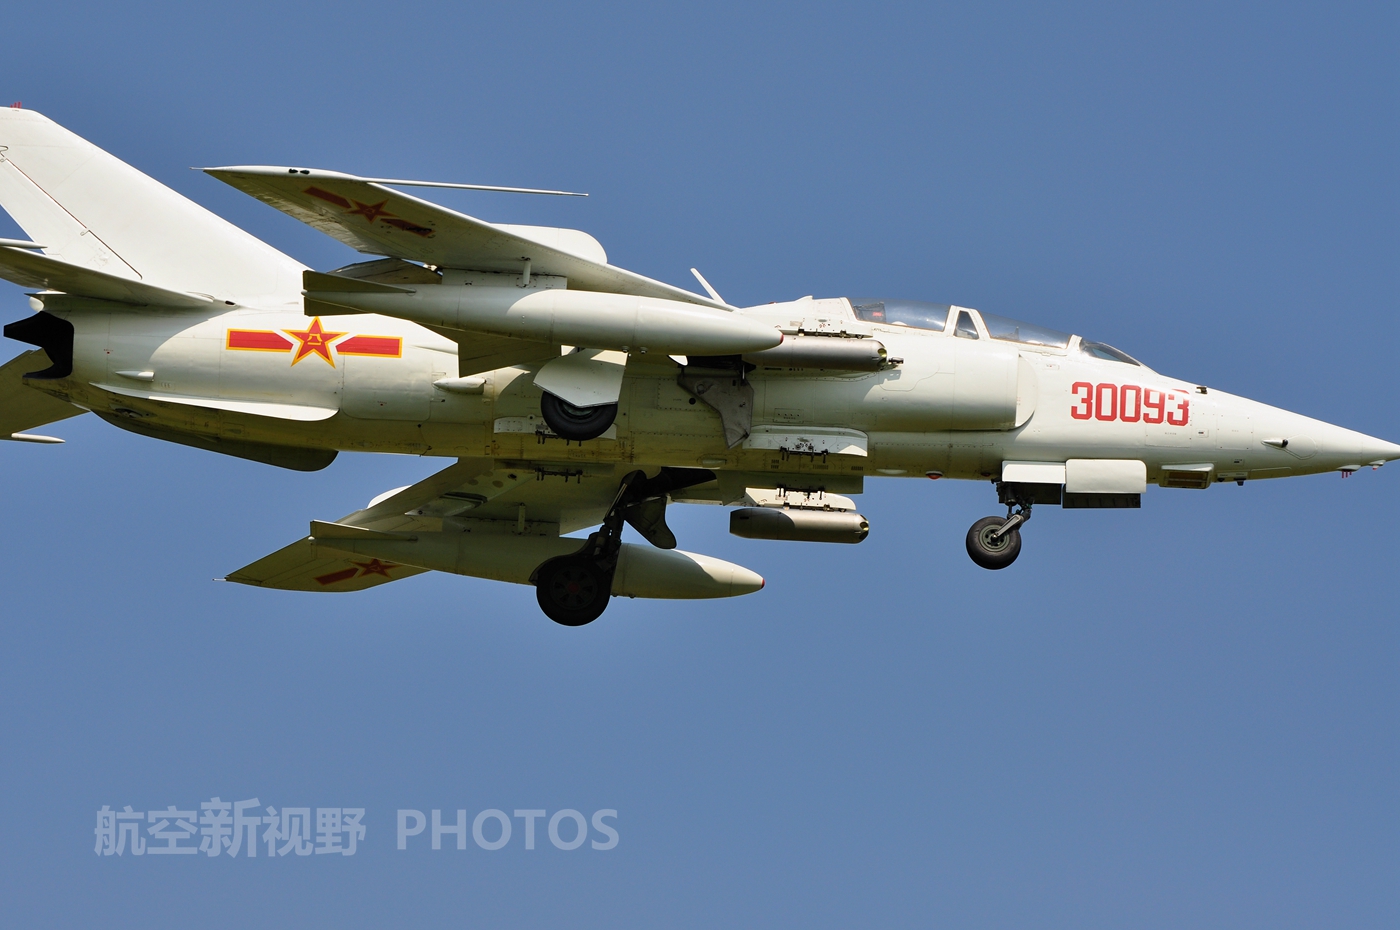 中国空军强-5强击机图集,国产第一款专业攻击机